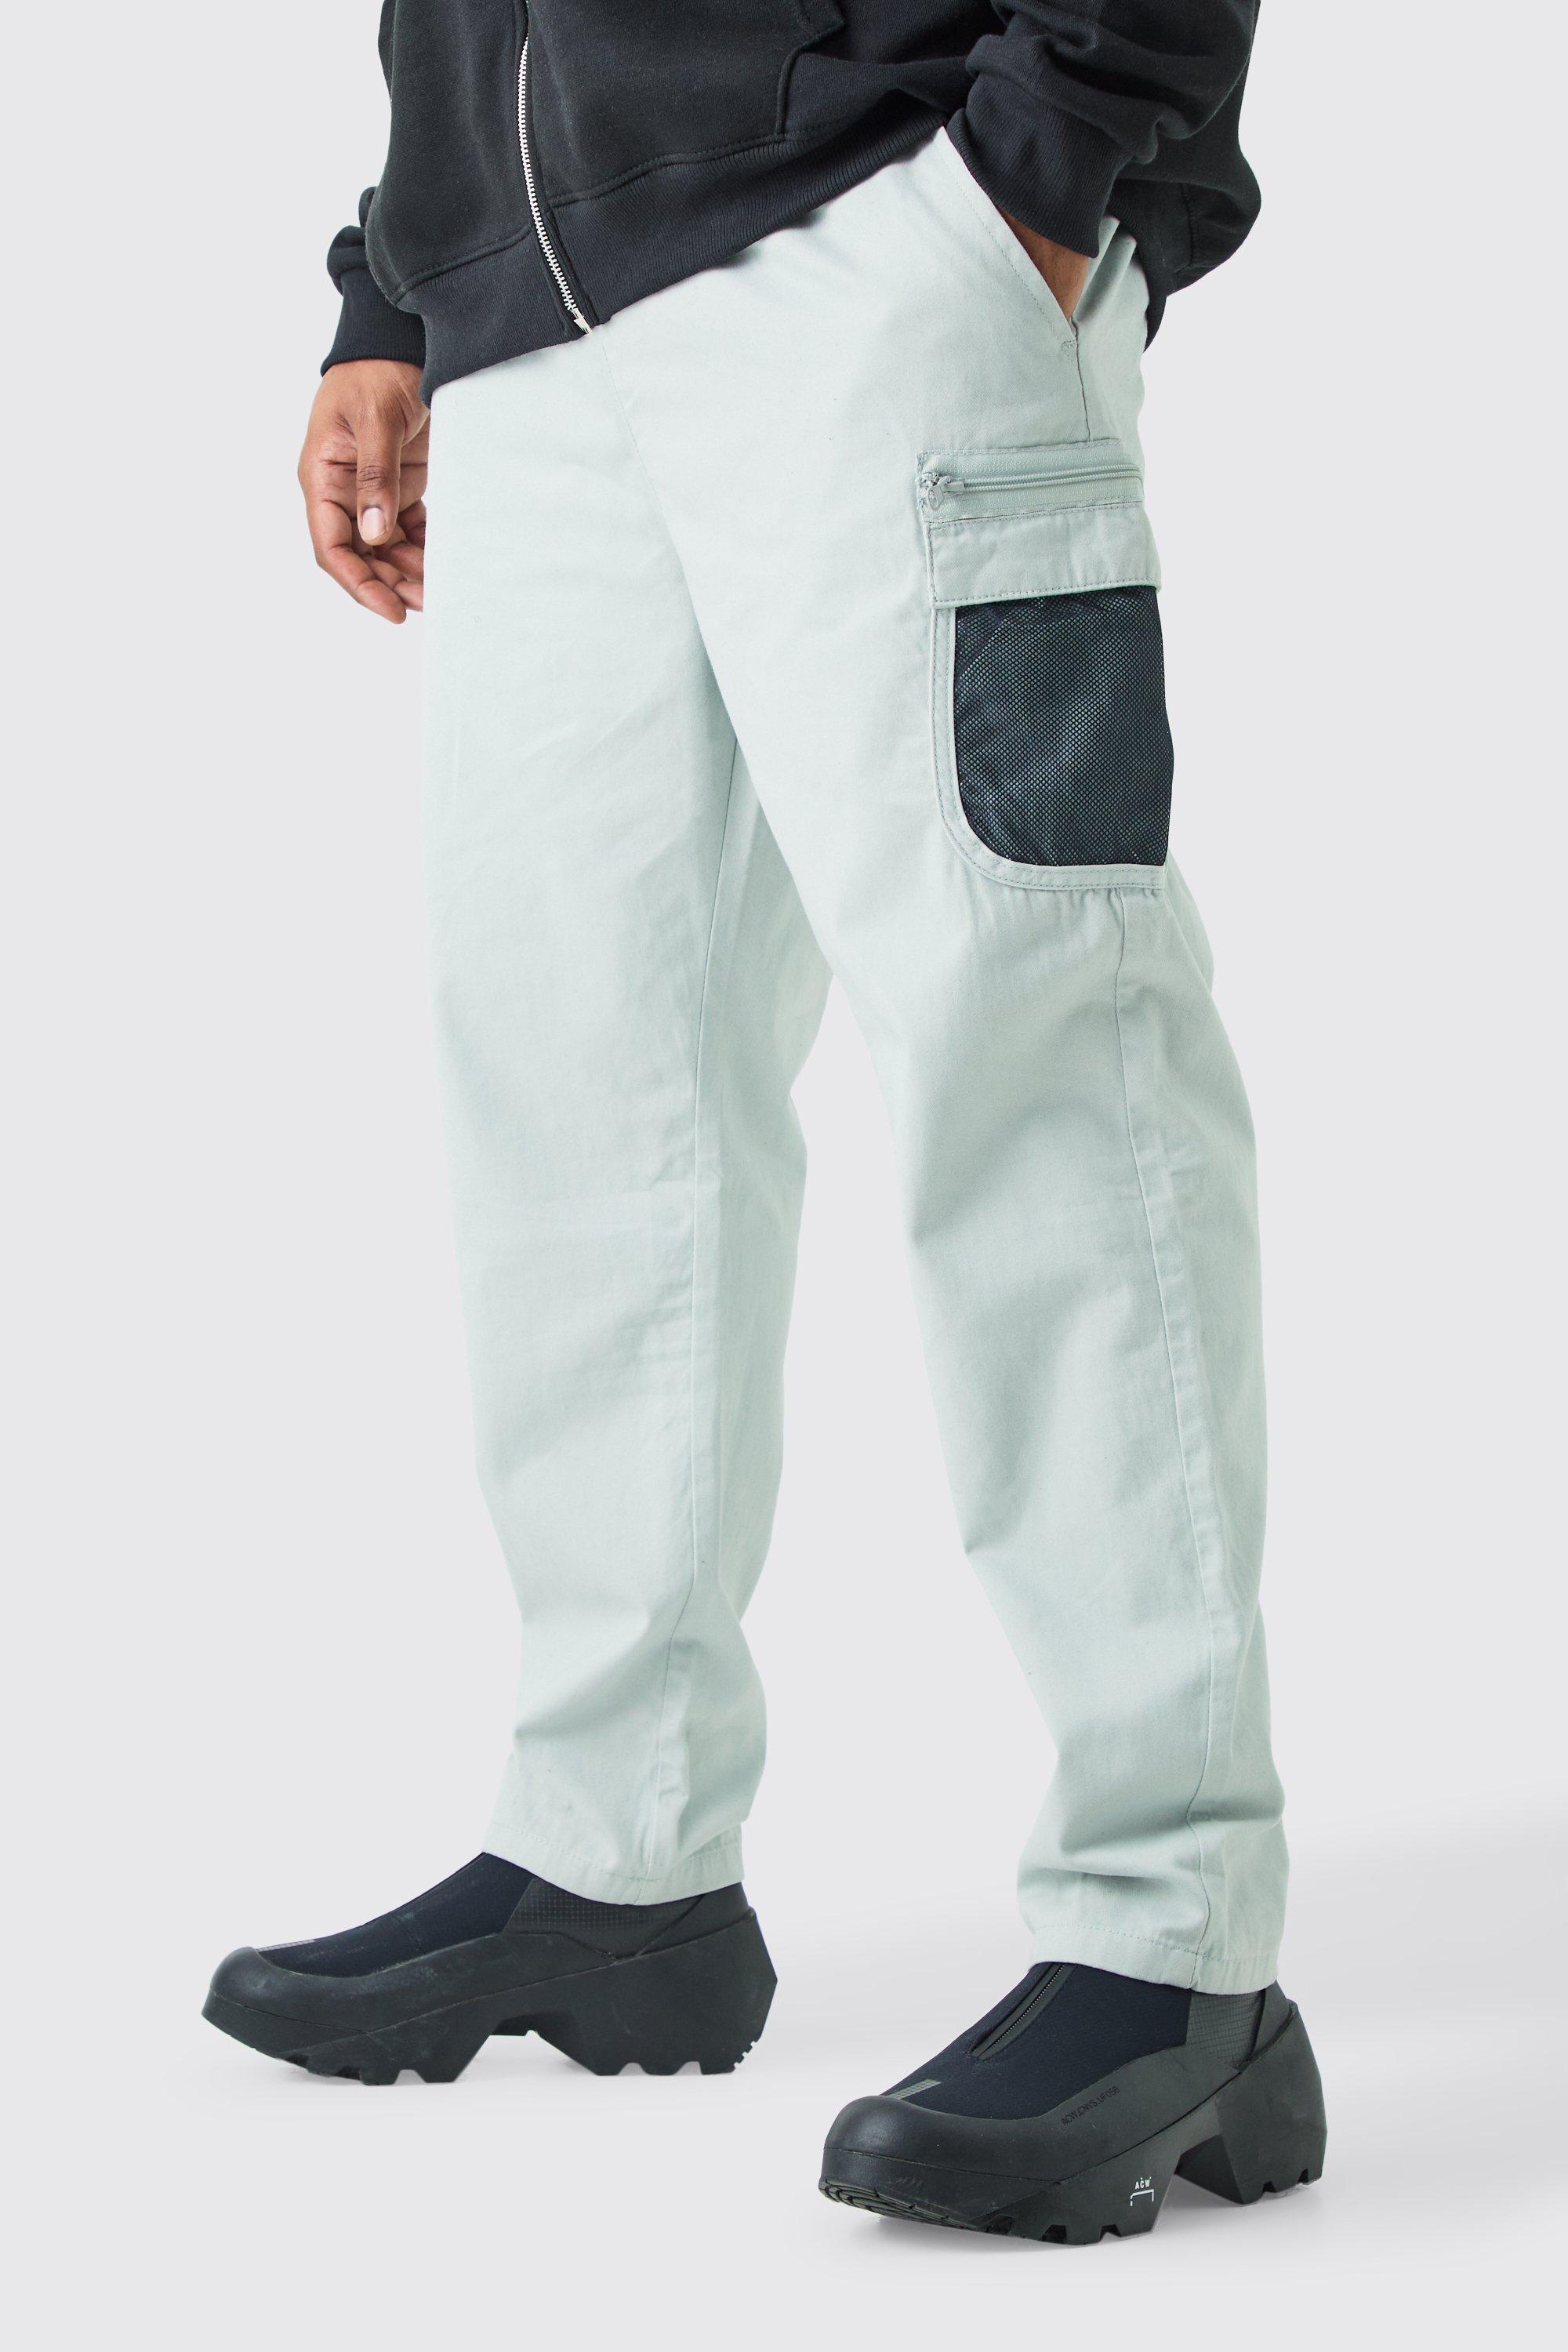 grande taille - pantalon cargo en mesh homme - gris - xxxl, gris